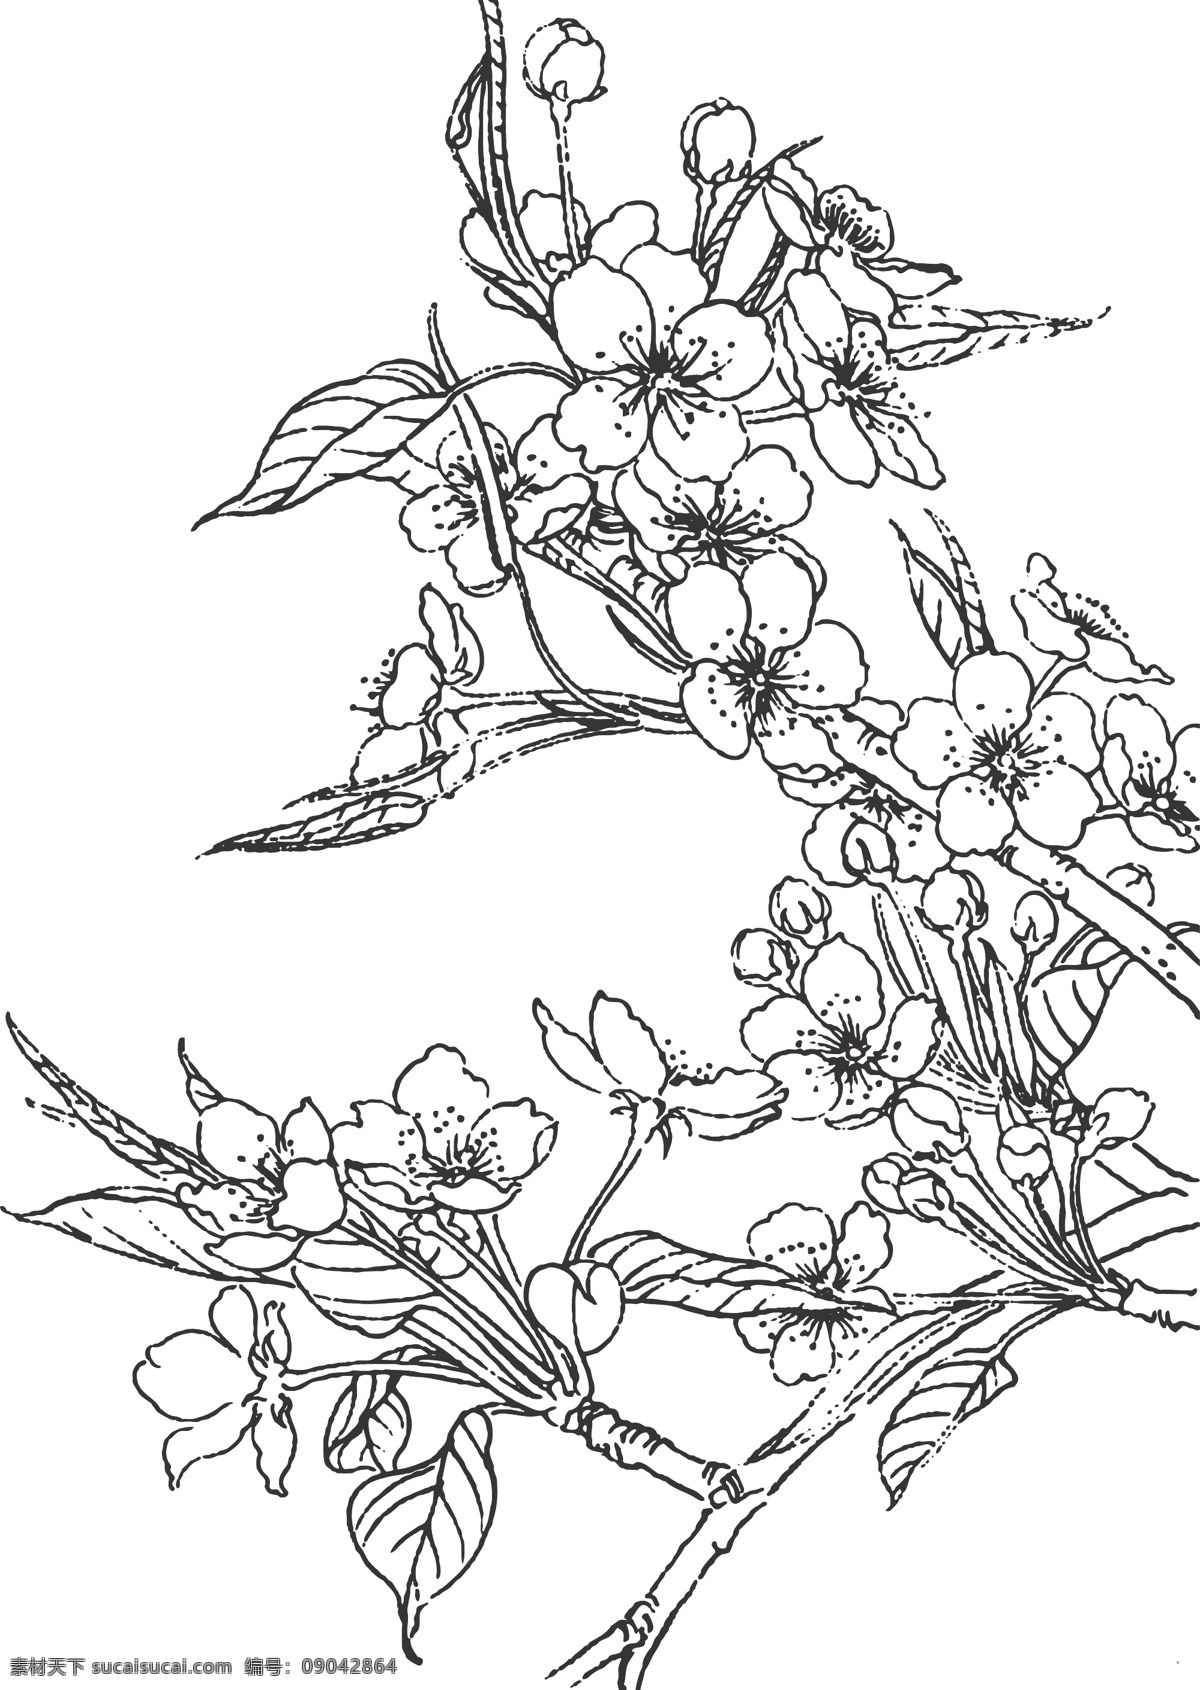 梨花 植物 花卉 观赏 香味浓烈 装饰 线条 矢量 插画 白描 春季开花 花色洁白 如同雪花 生物世界 花草